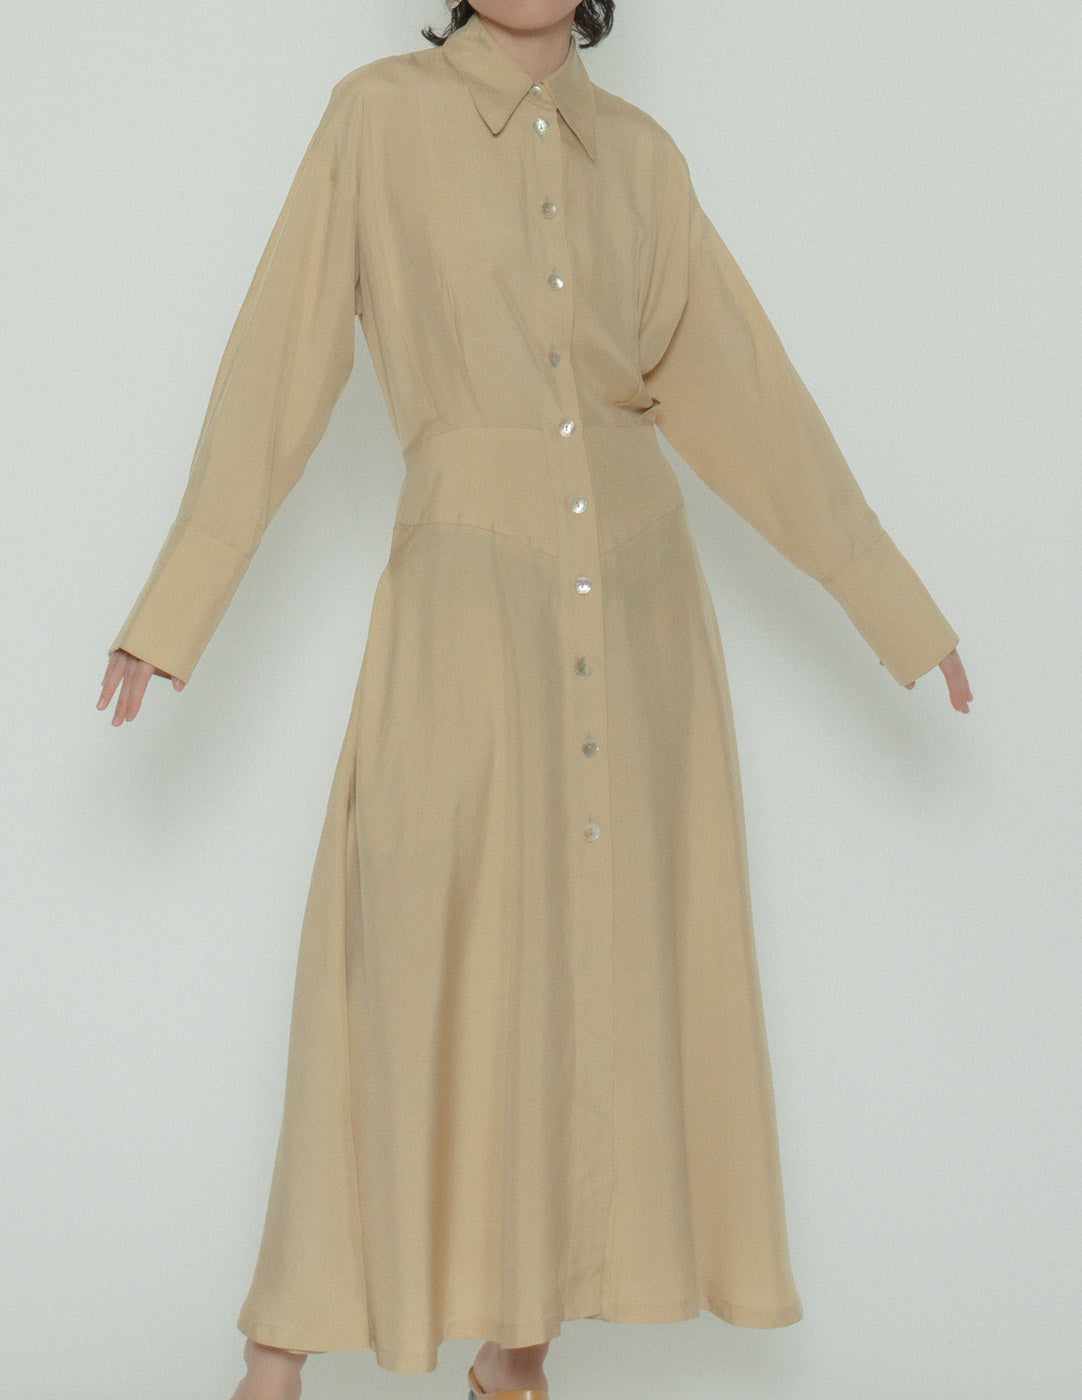 Emmanuelle Khanh vintage buttoned shirt dress detail